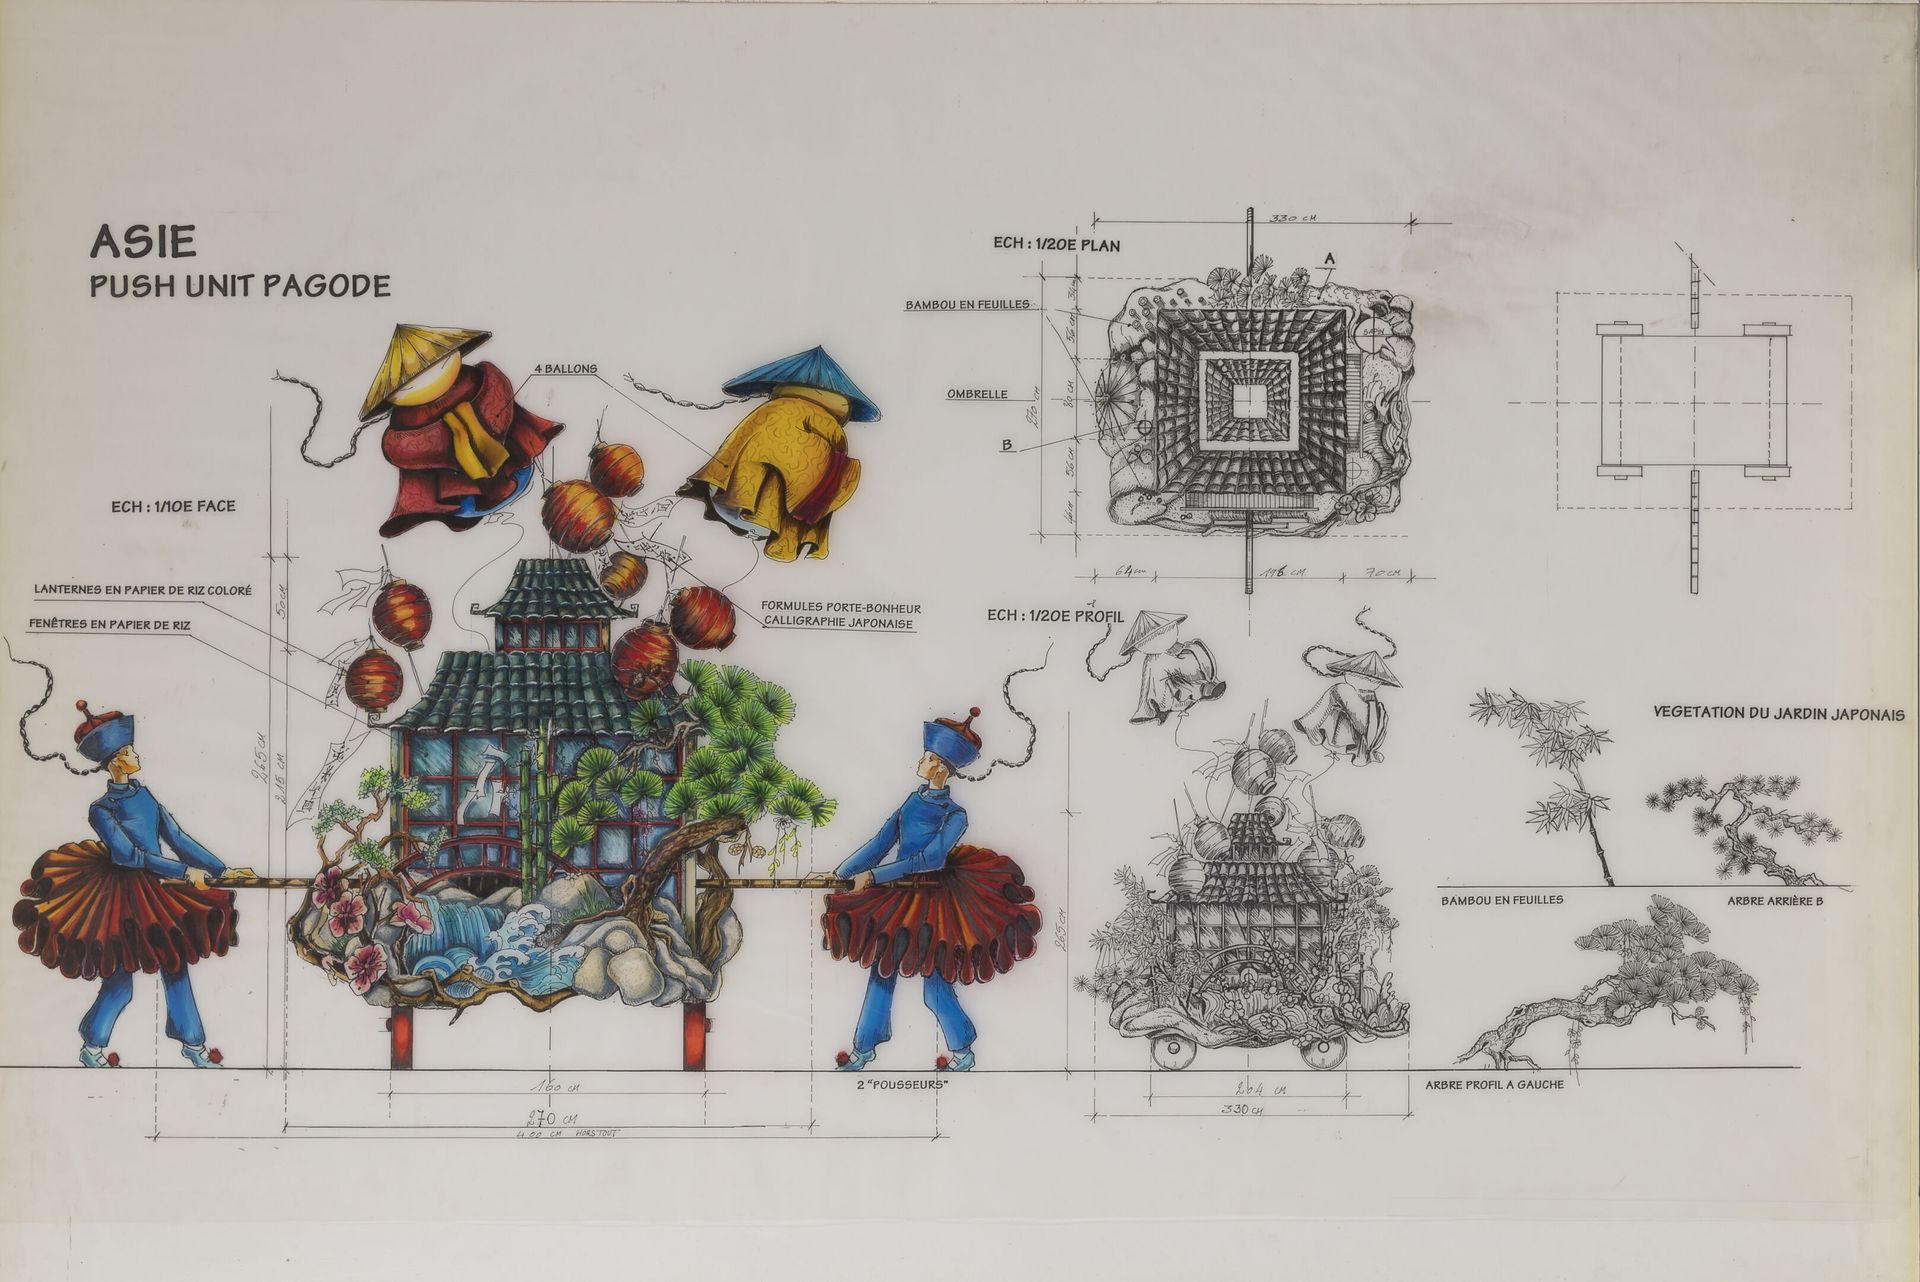 Petrika IONESCO (1946) 亚洲：推单位宝塔。

巴黎迪斯尼乐园的项目。

墨水和毛笔在印有背景的描图纸上（粘在纸板上面）。

无符号。

6&hellip;